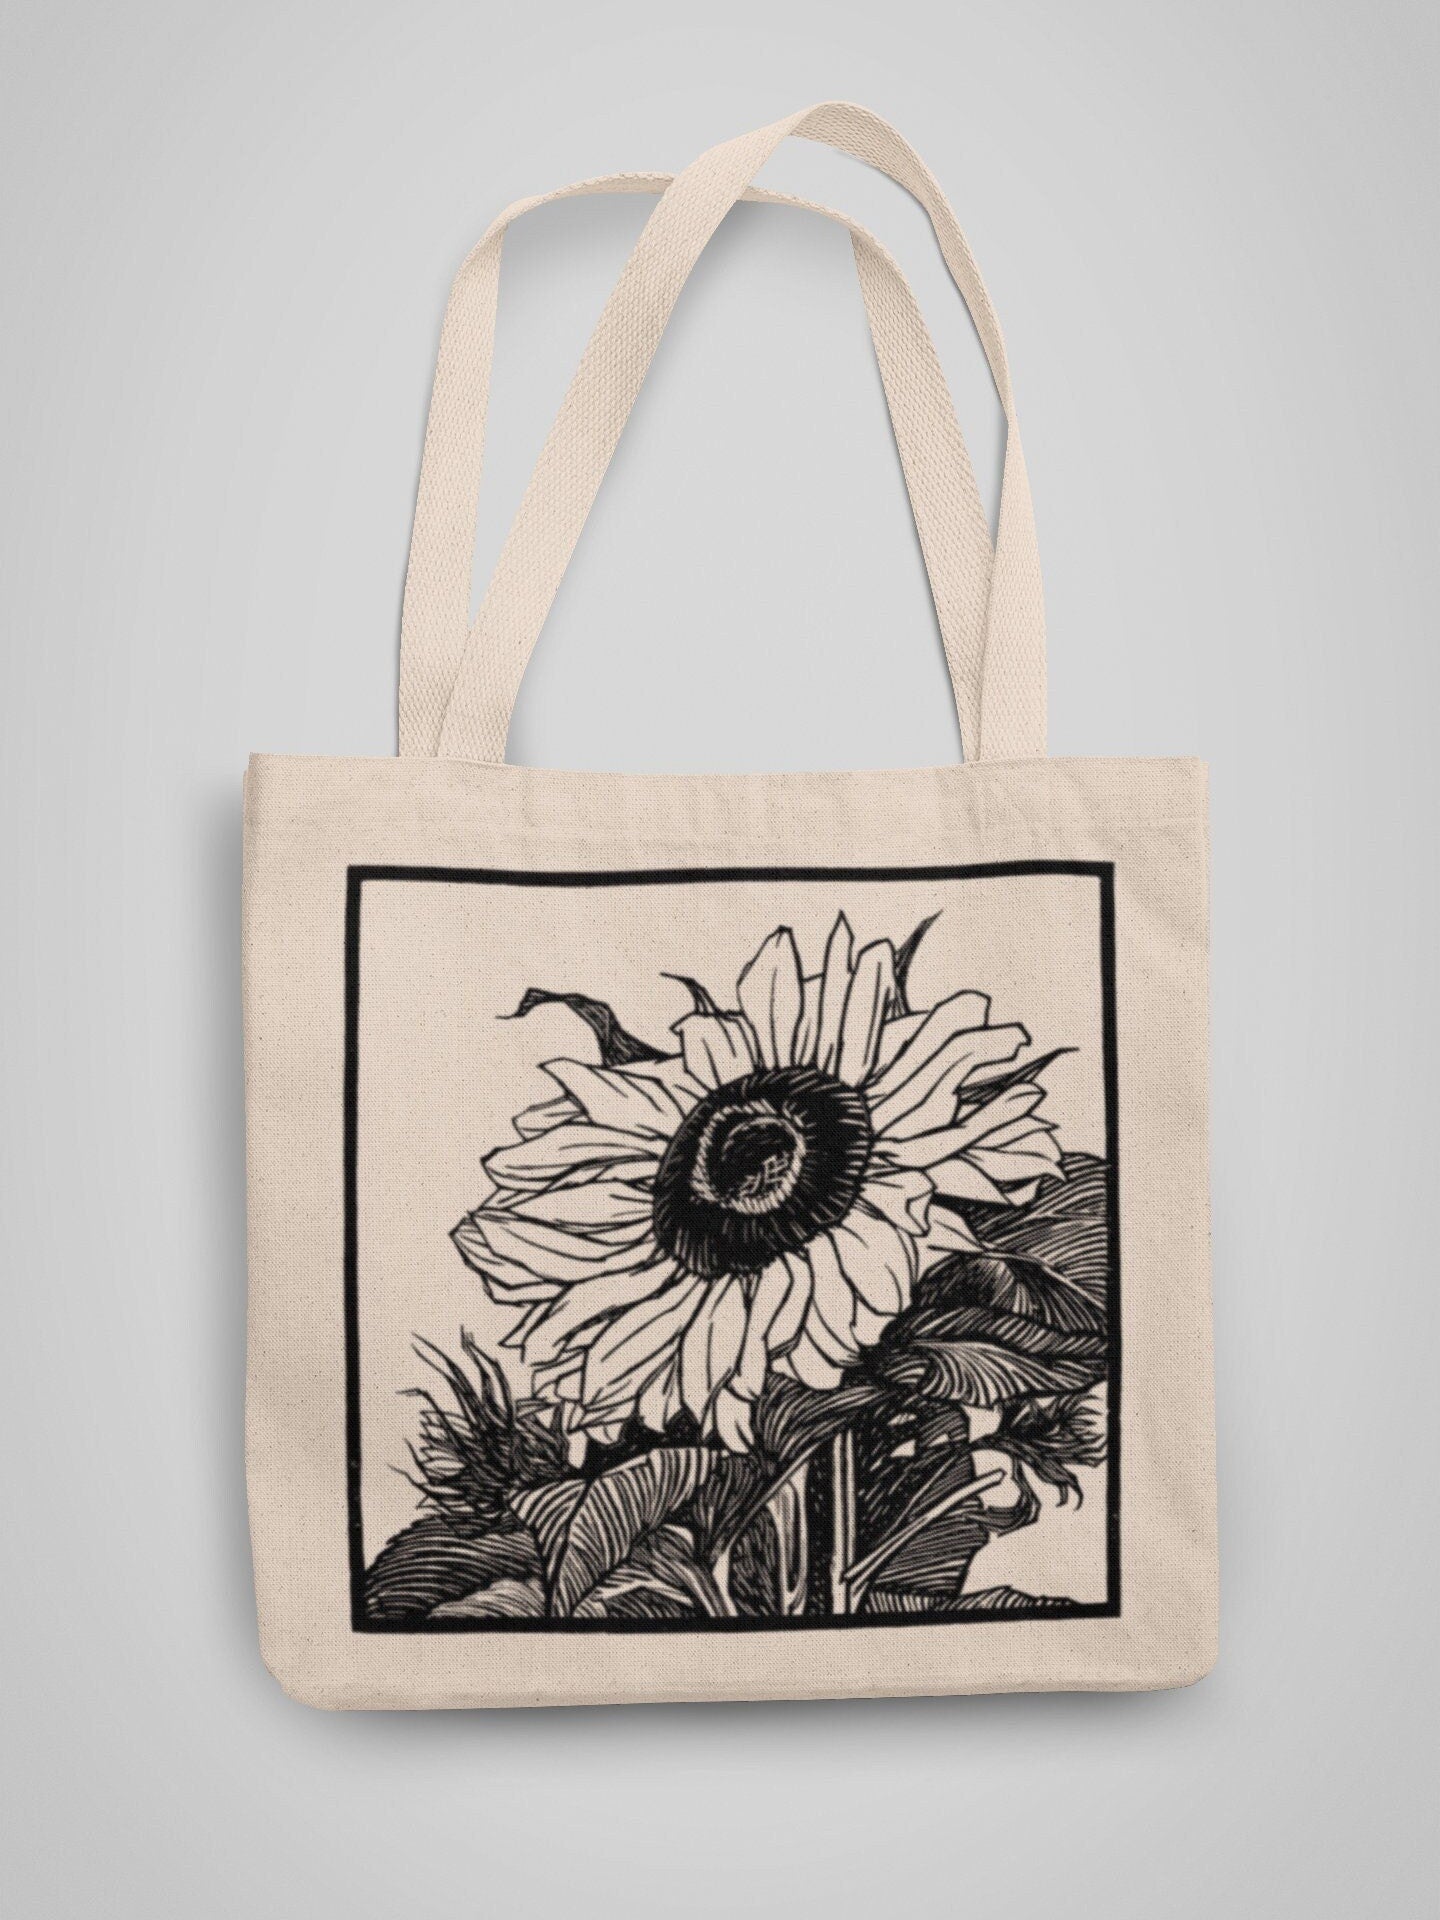 JULIE DE GRAAG - Sunflower Tote Bag - Pathos Studio - Tote Bags